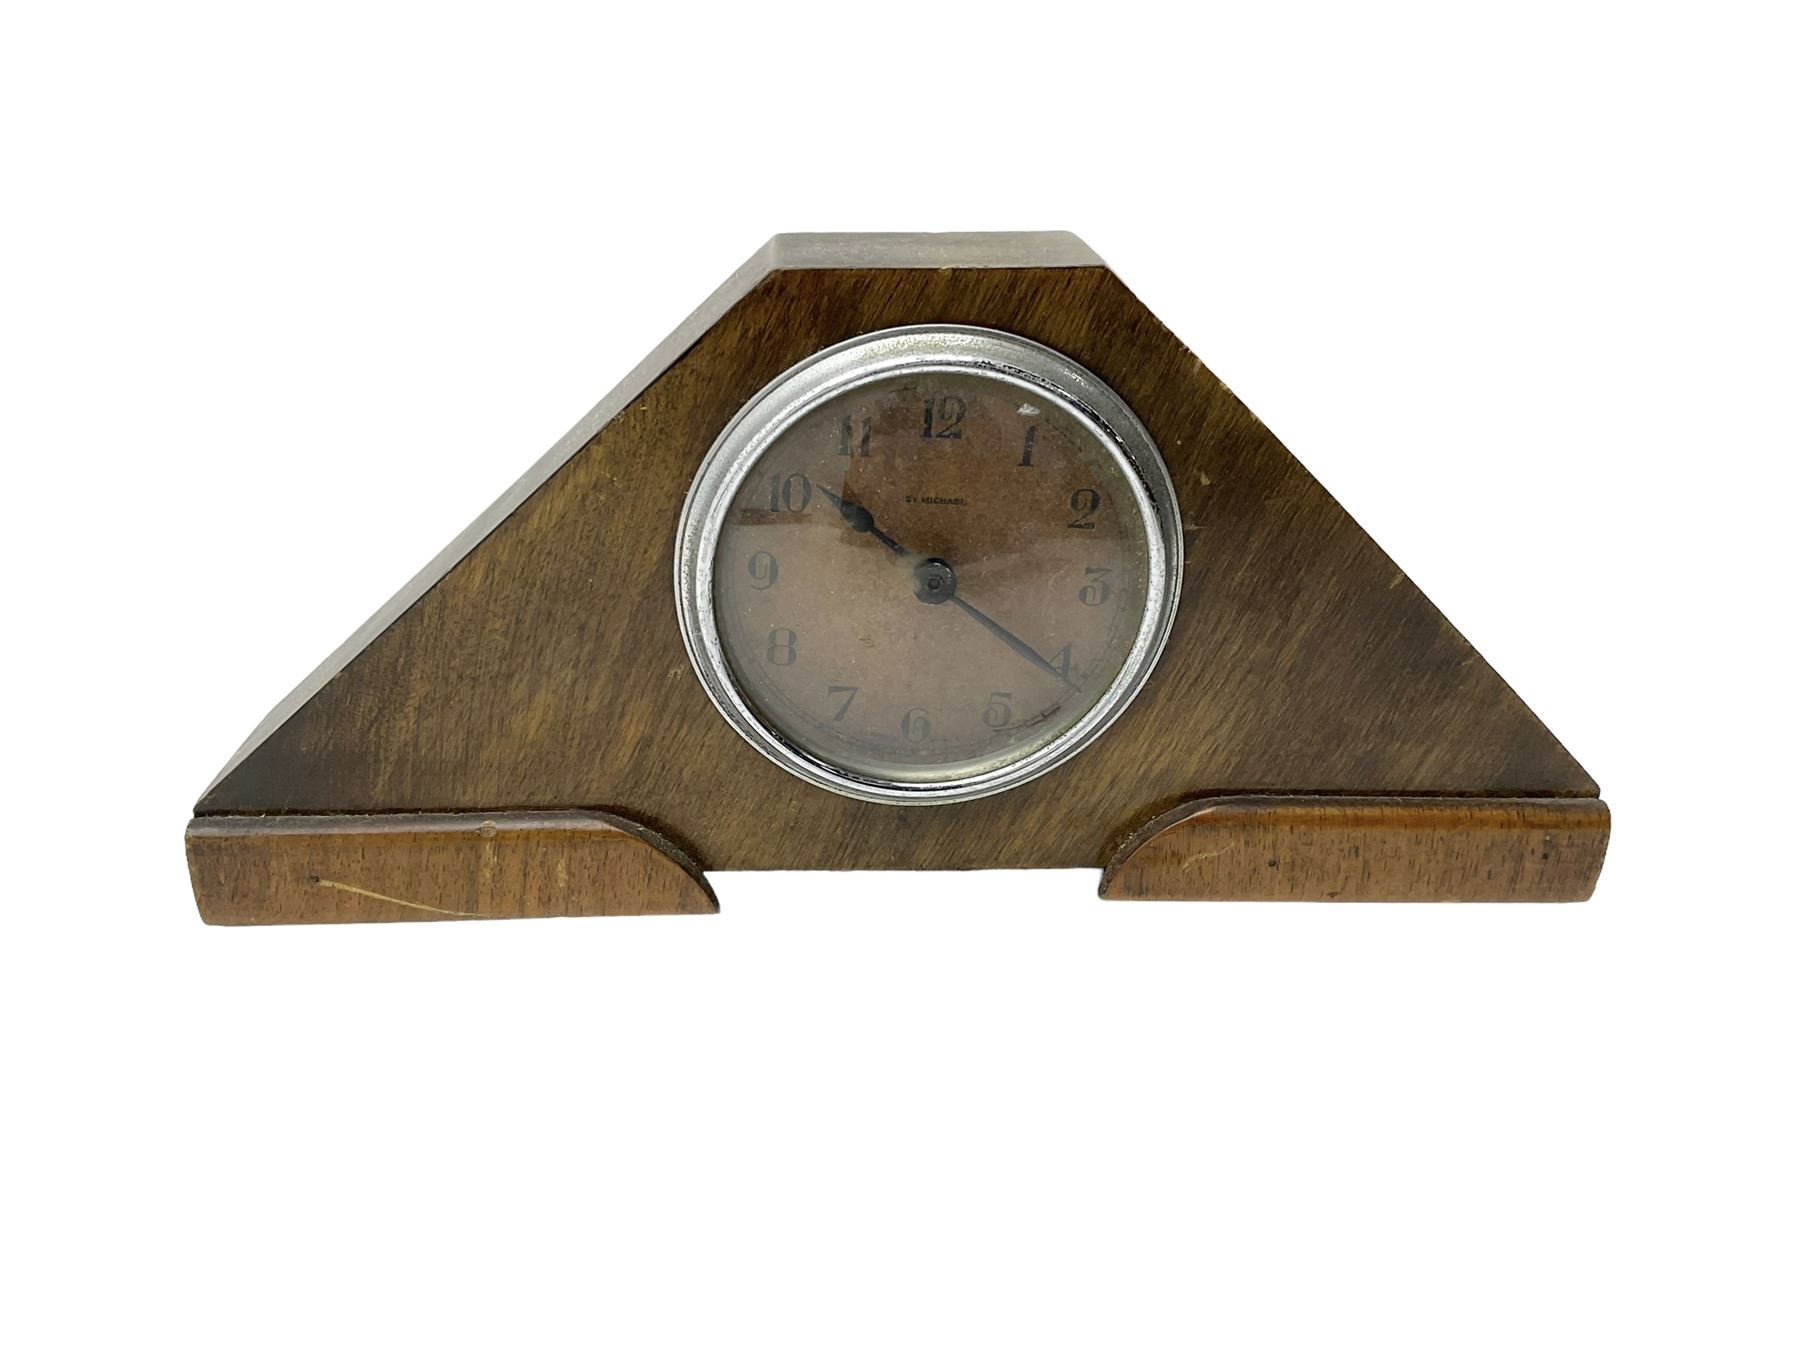 1930s - English mantle clock in oak case